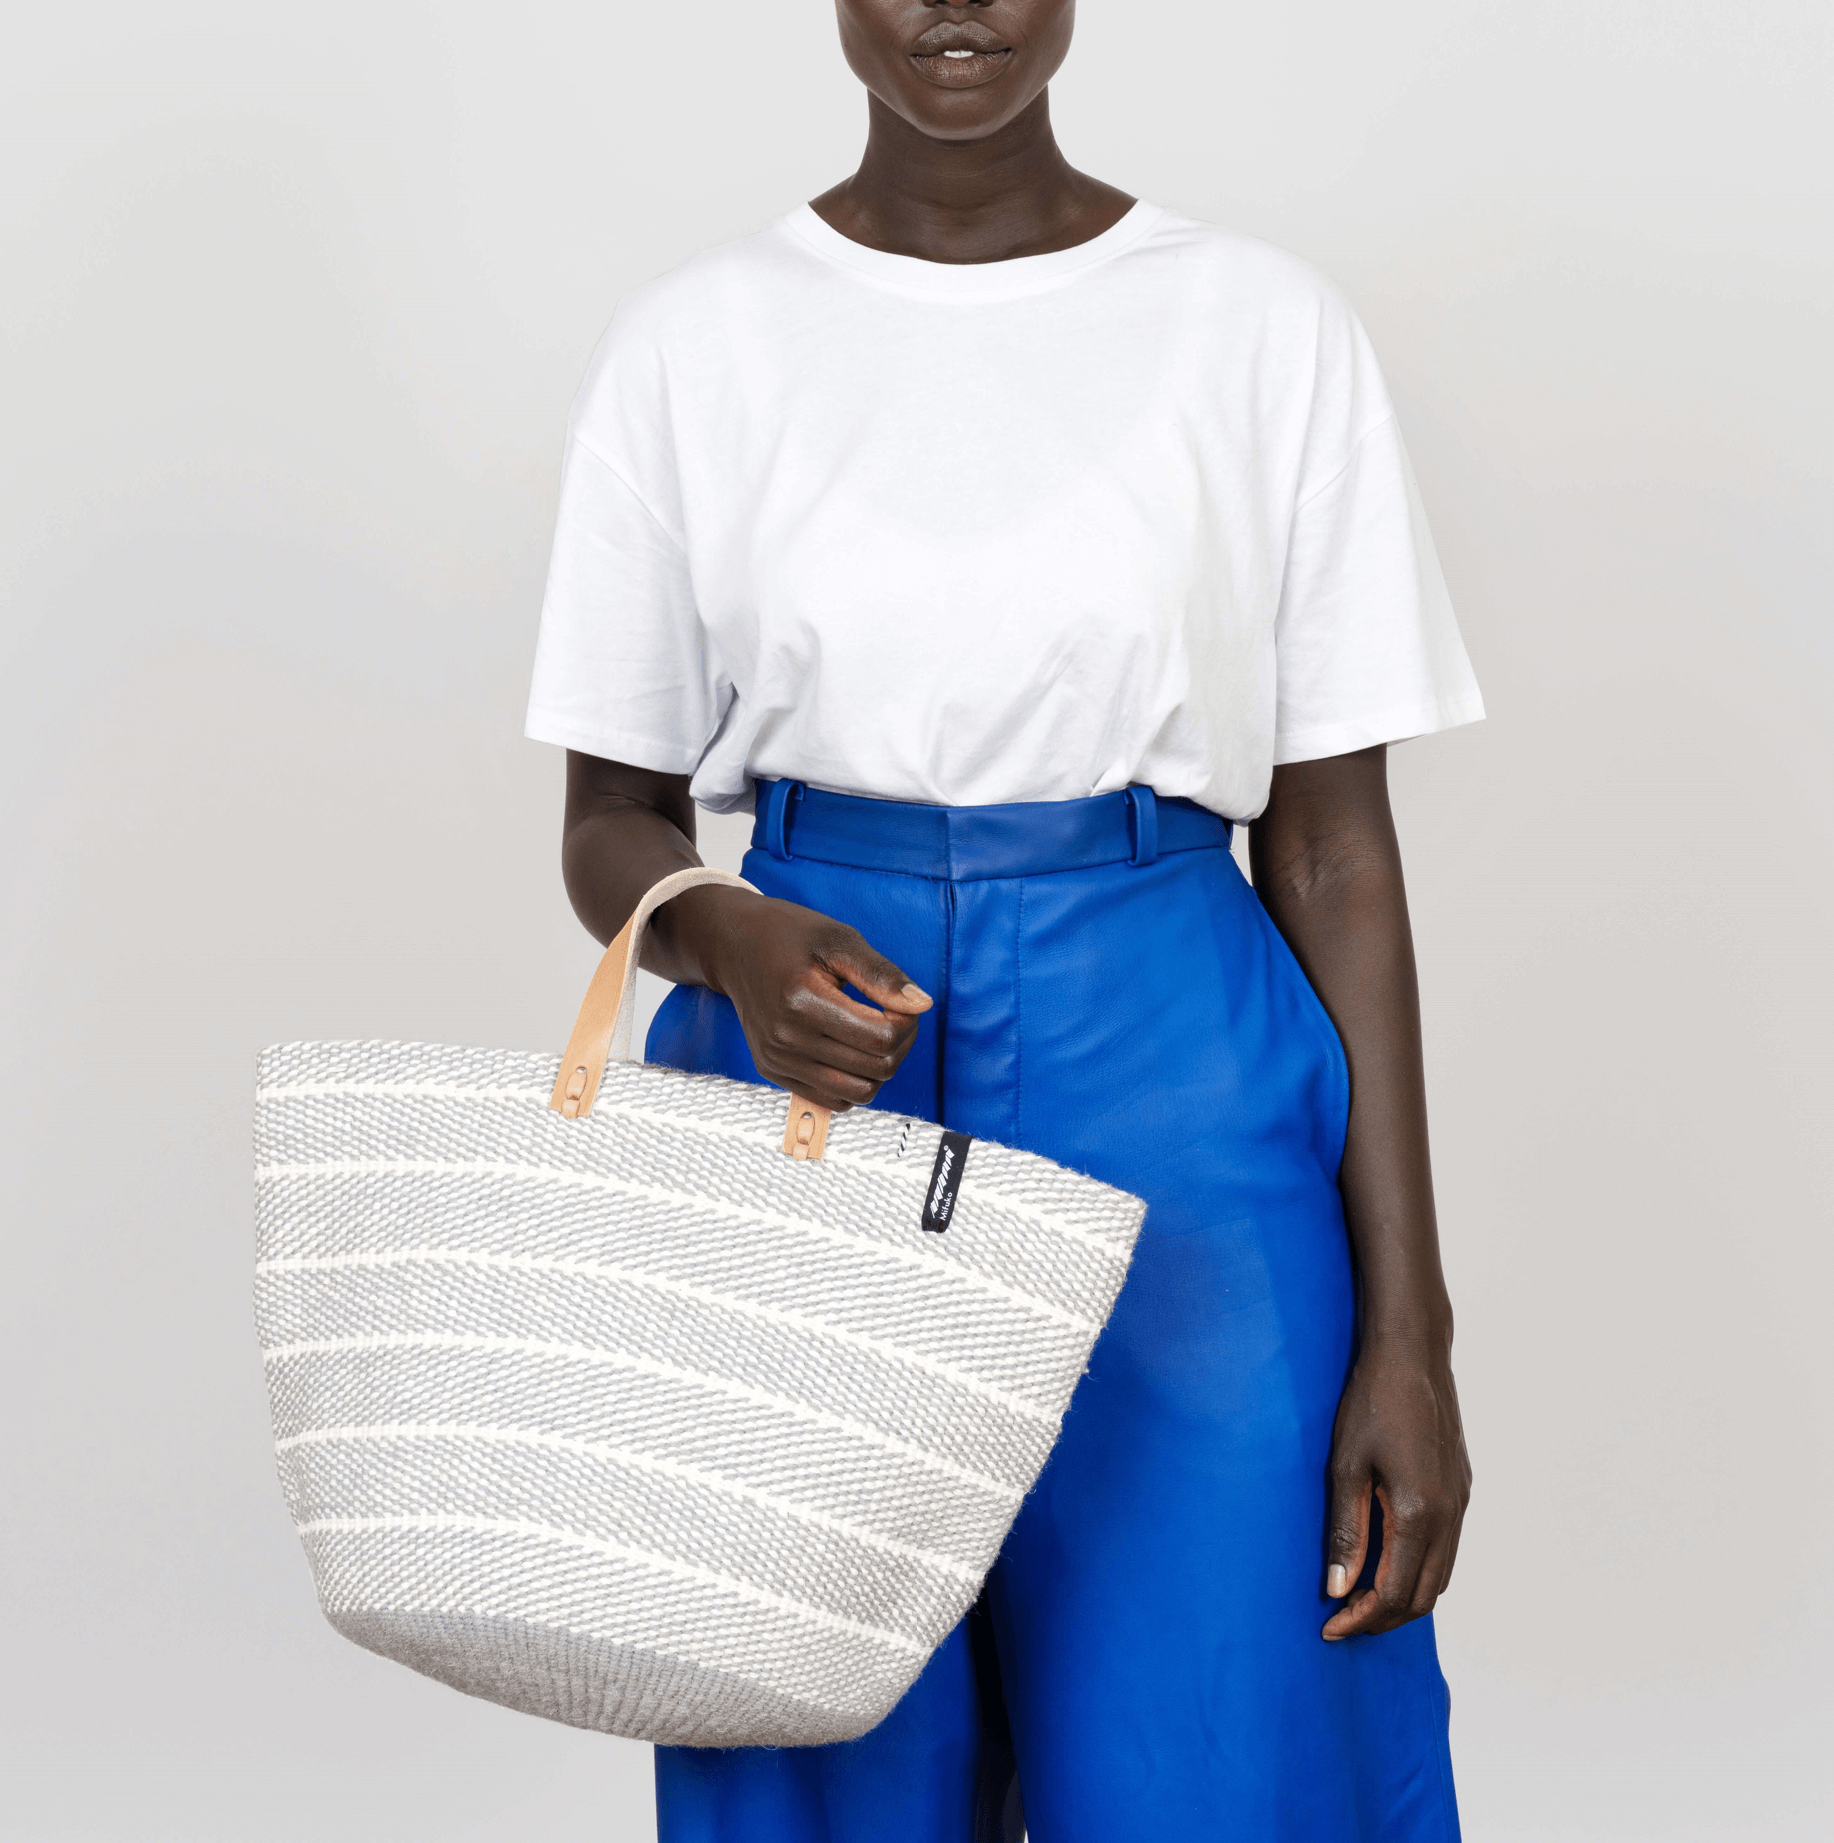 Mifuko Wool and paper Market basket Pamba market  basket | Light grey twill weave M